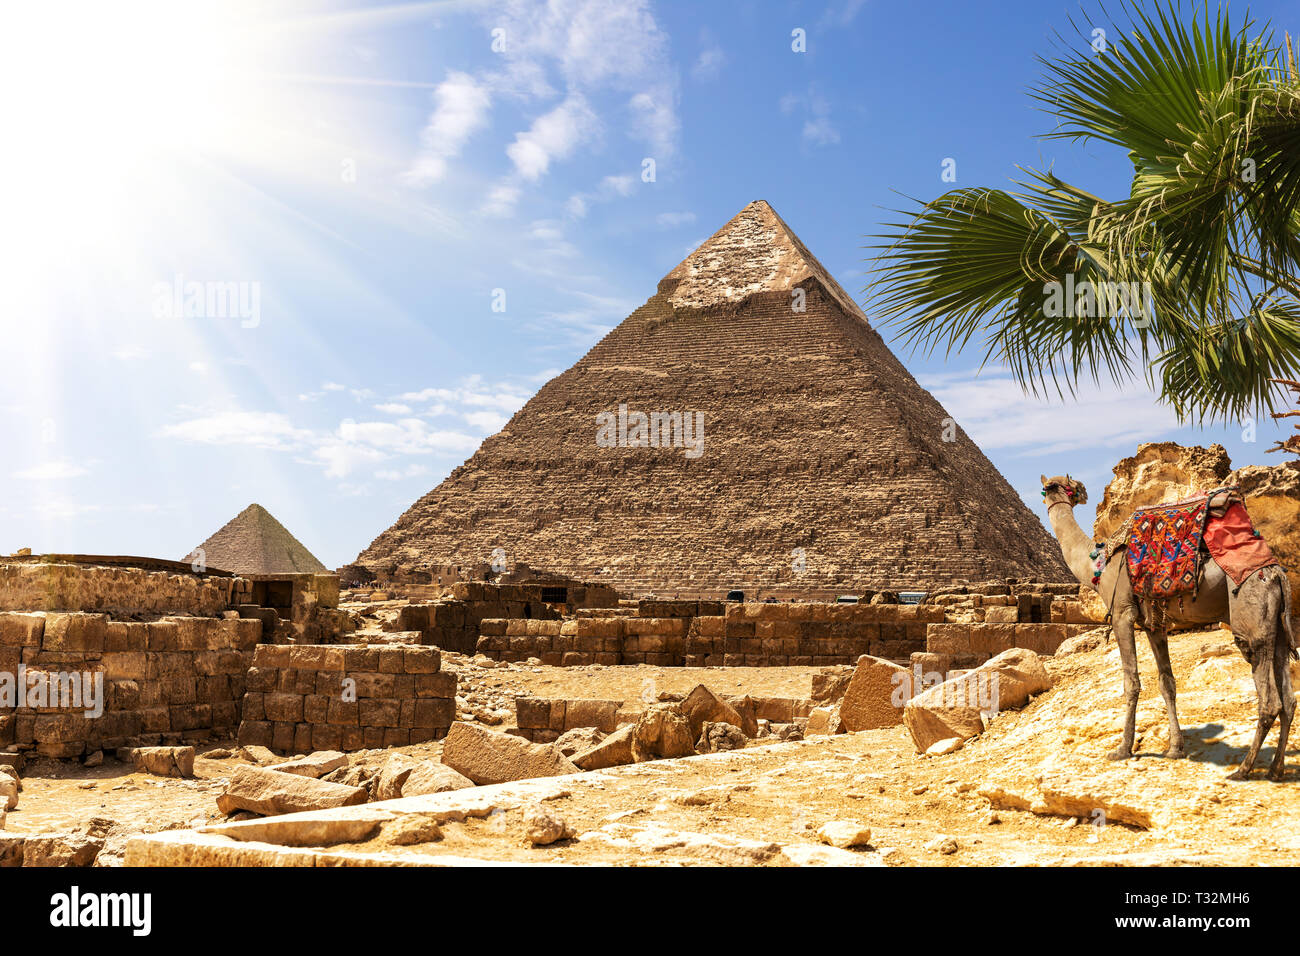 Las pirámides de Giza, la vista sobre la pirámide de Khafre en un soleado desierto. Foto de stock